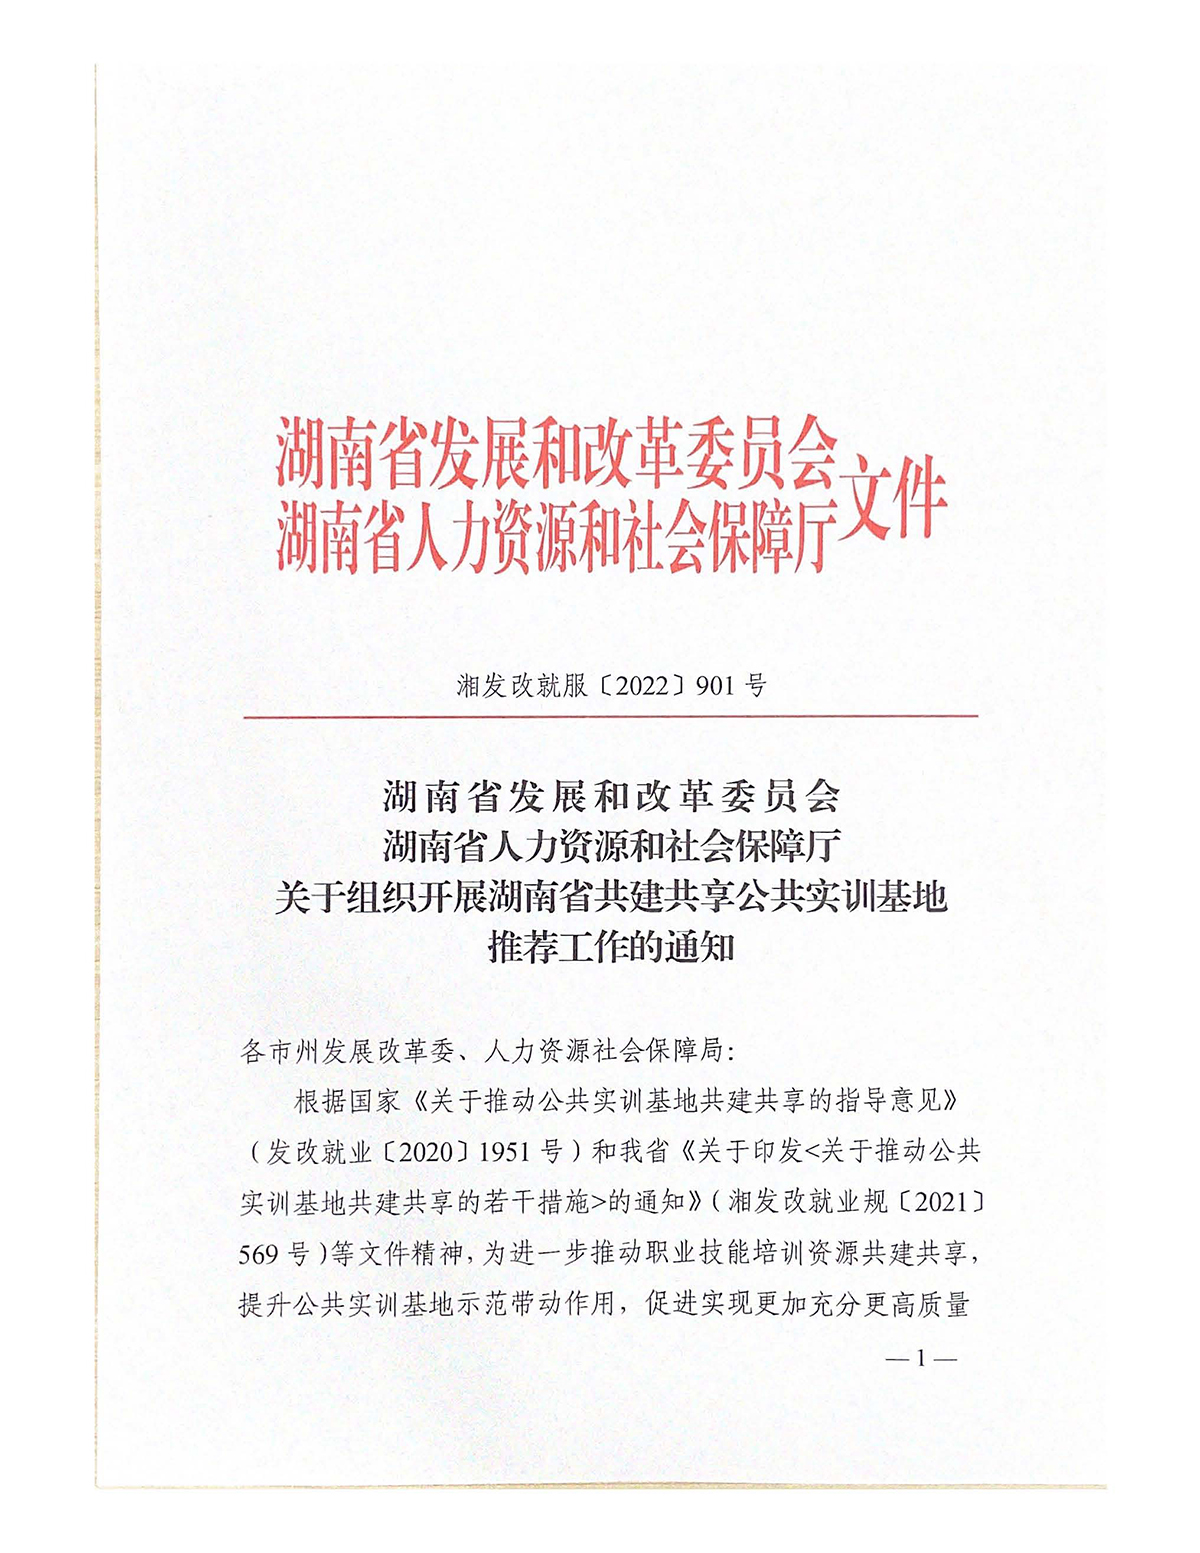 关于组织开展湖南省共建共享公共实训基地推荐工作的通知 （正式文件）(1)(1)_页面_01.jpg